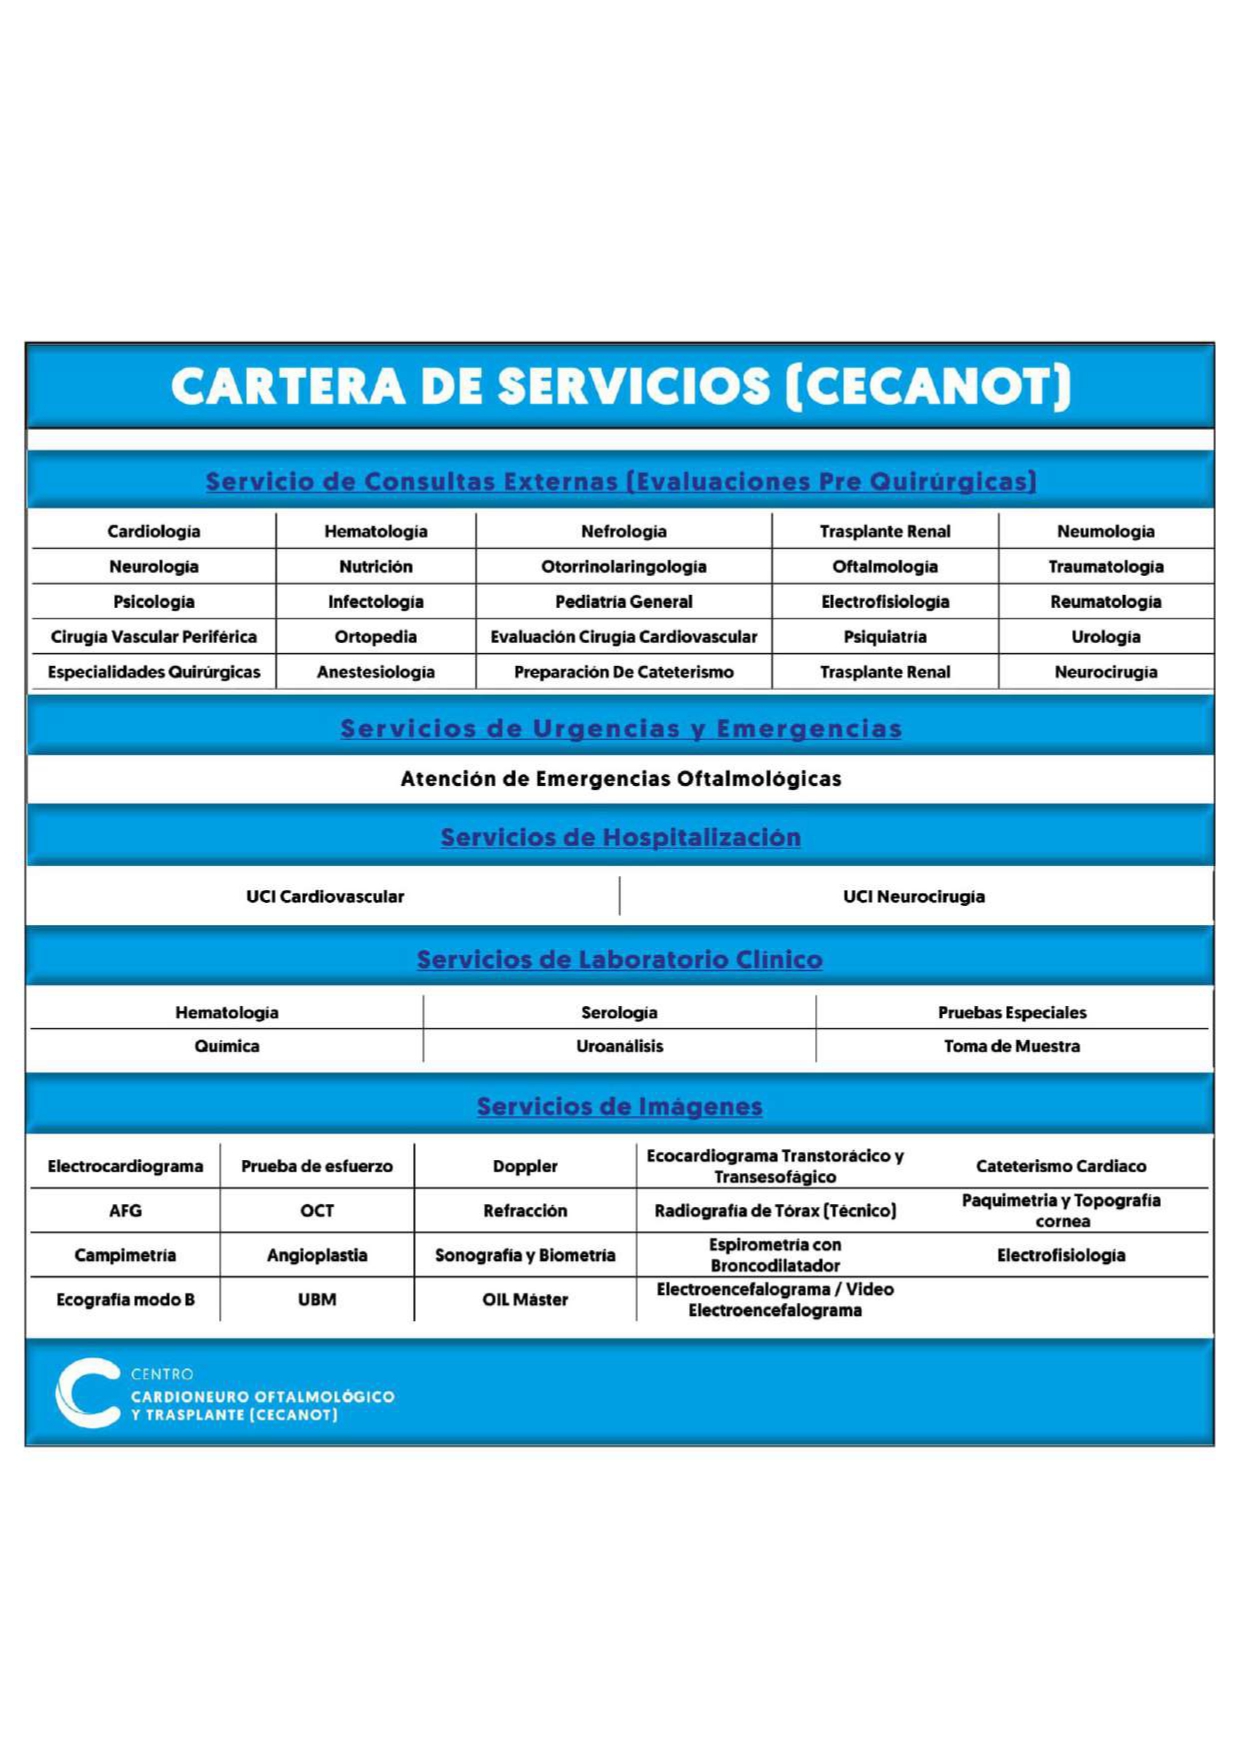 Consulta Especializada en Dolor Cervical - Centro CECOTEN